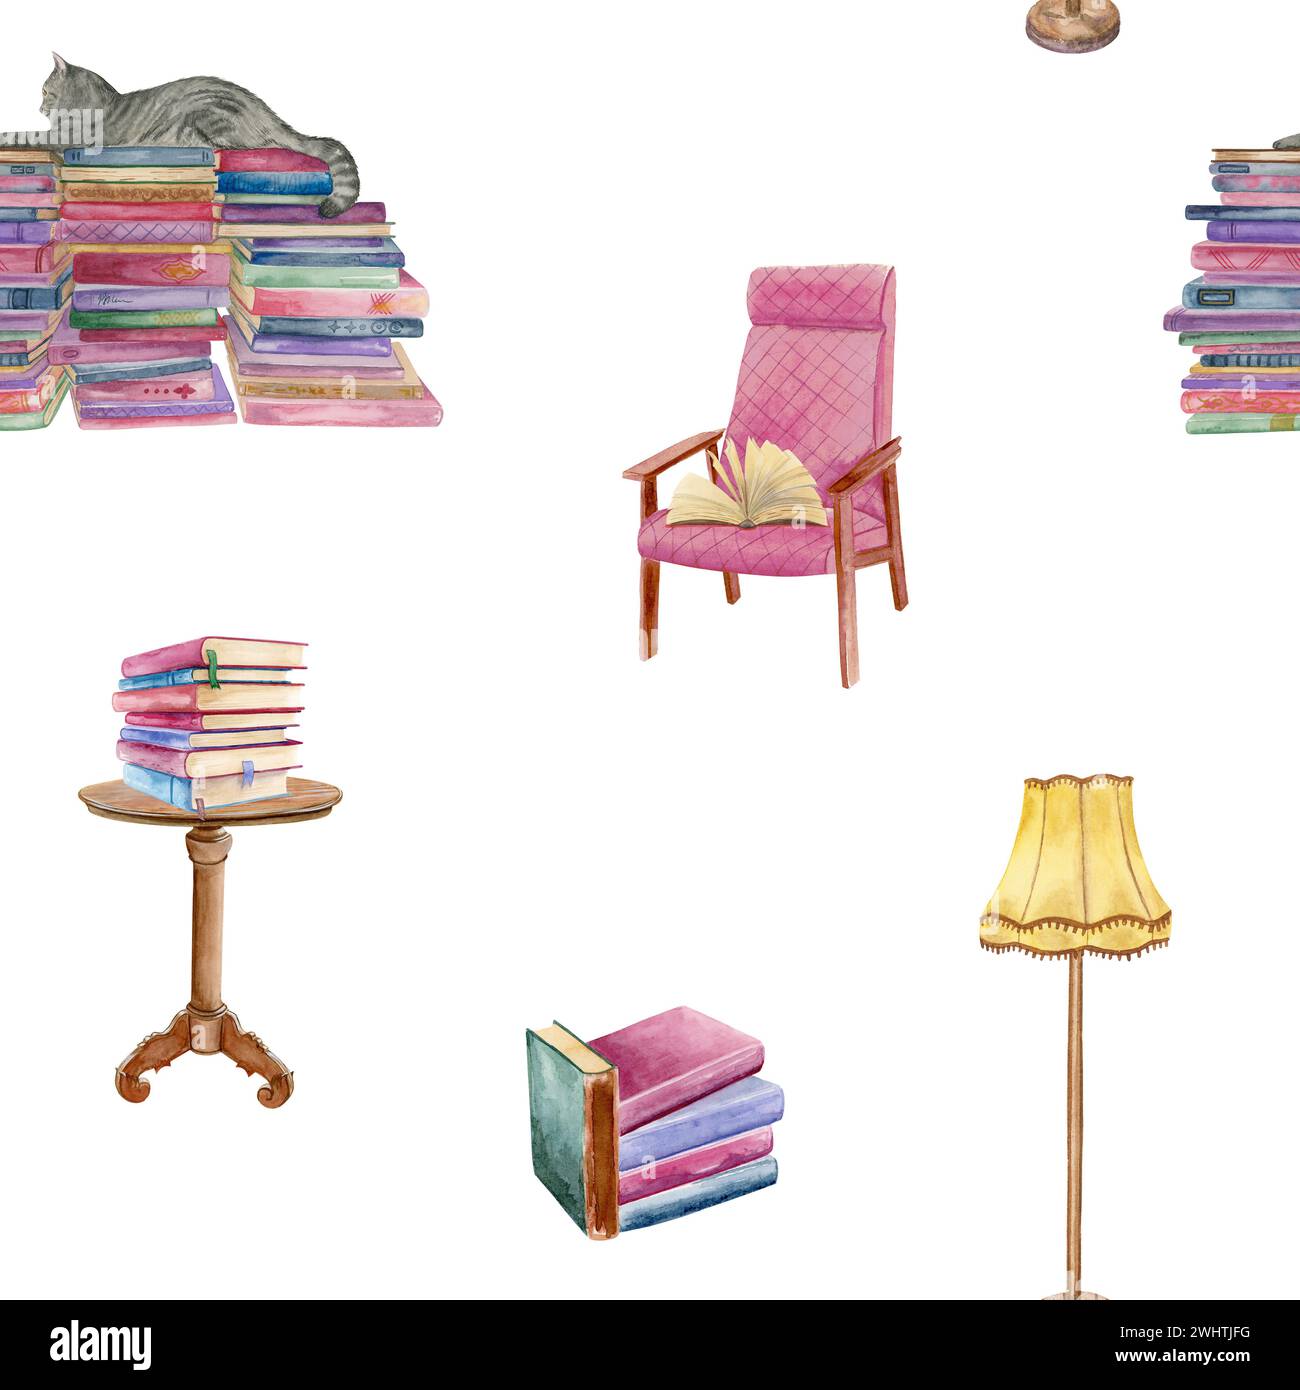 Motivo acquerello senza cuciture di una sedia rosa con un libro aperto, tavolo con una pila di libri, piantana gialla e una pila di libri con un gatto Foto Stock